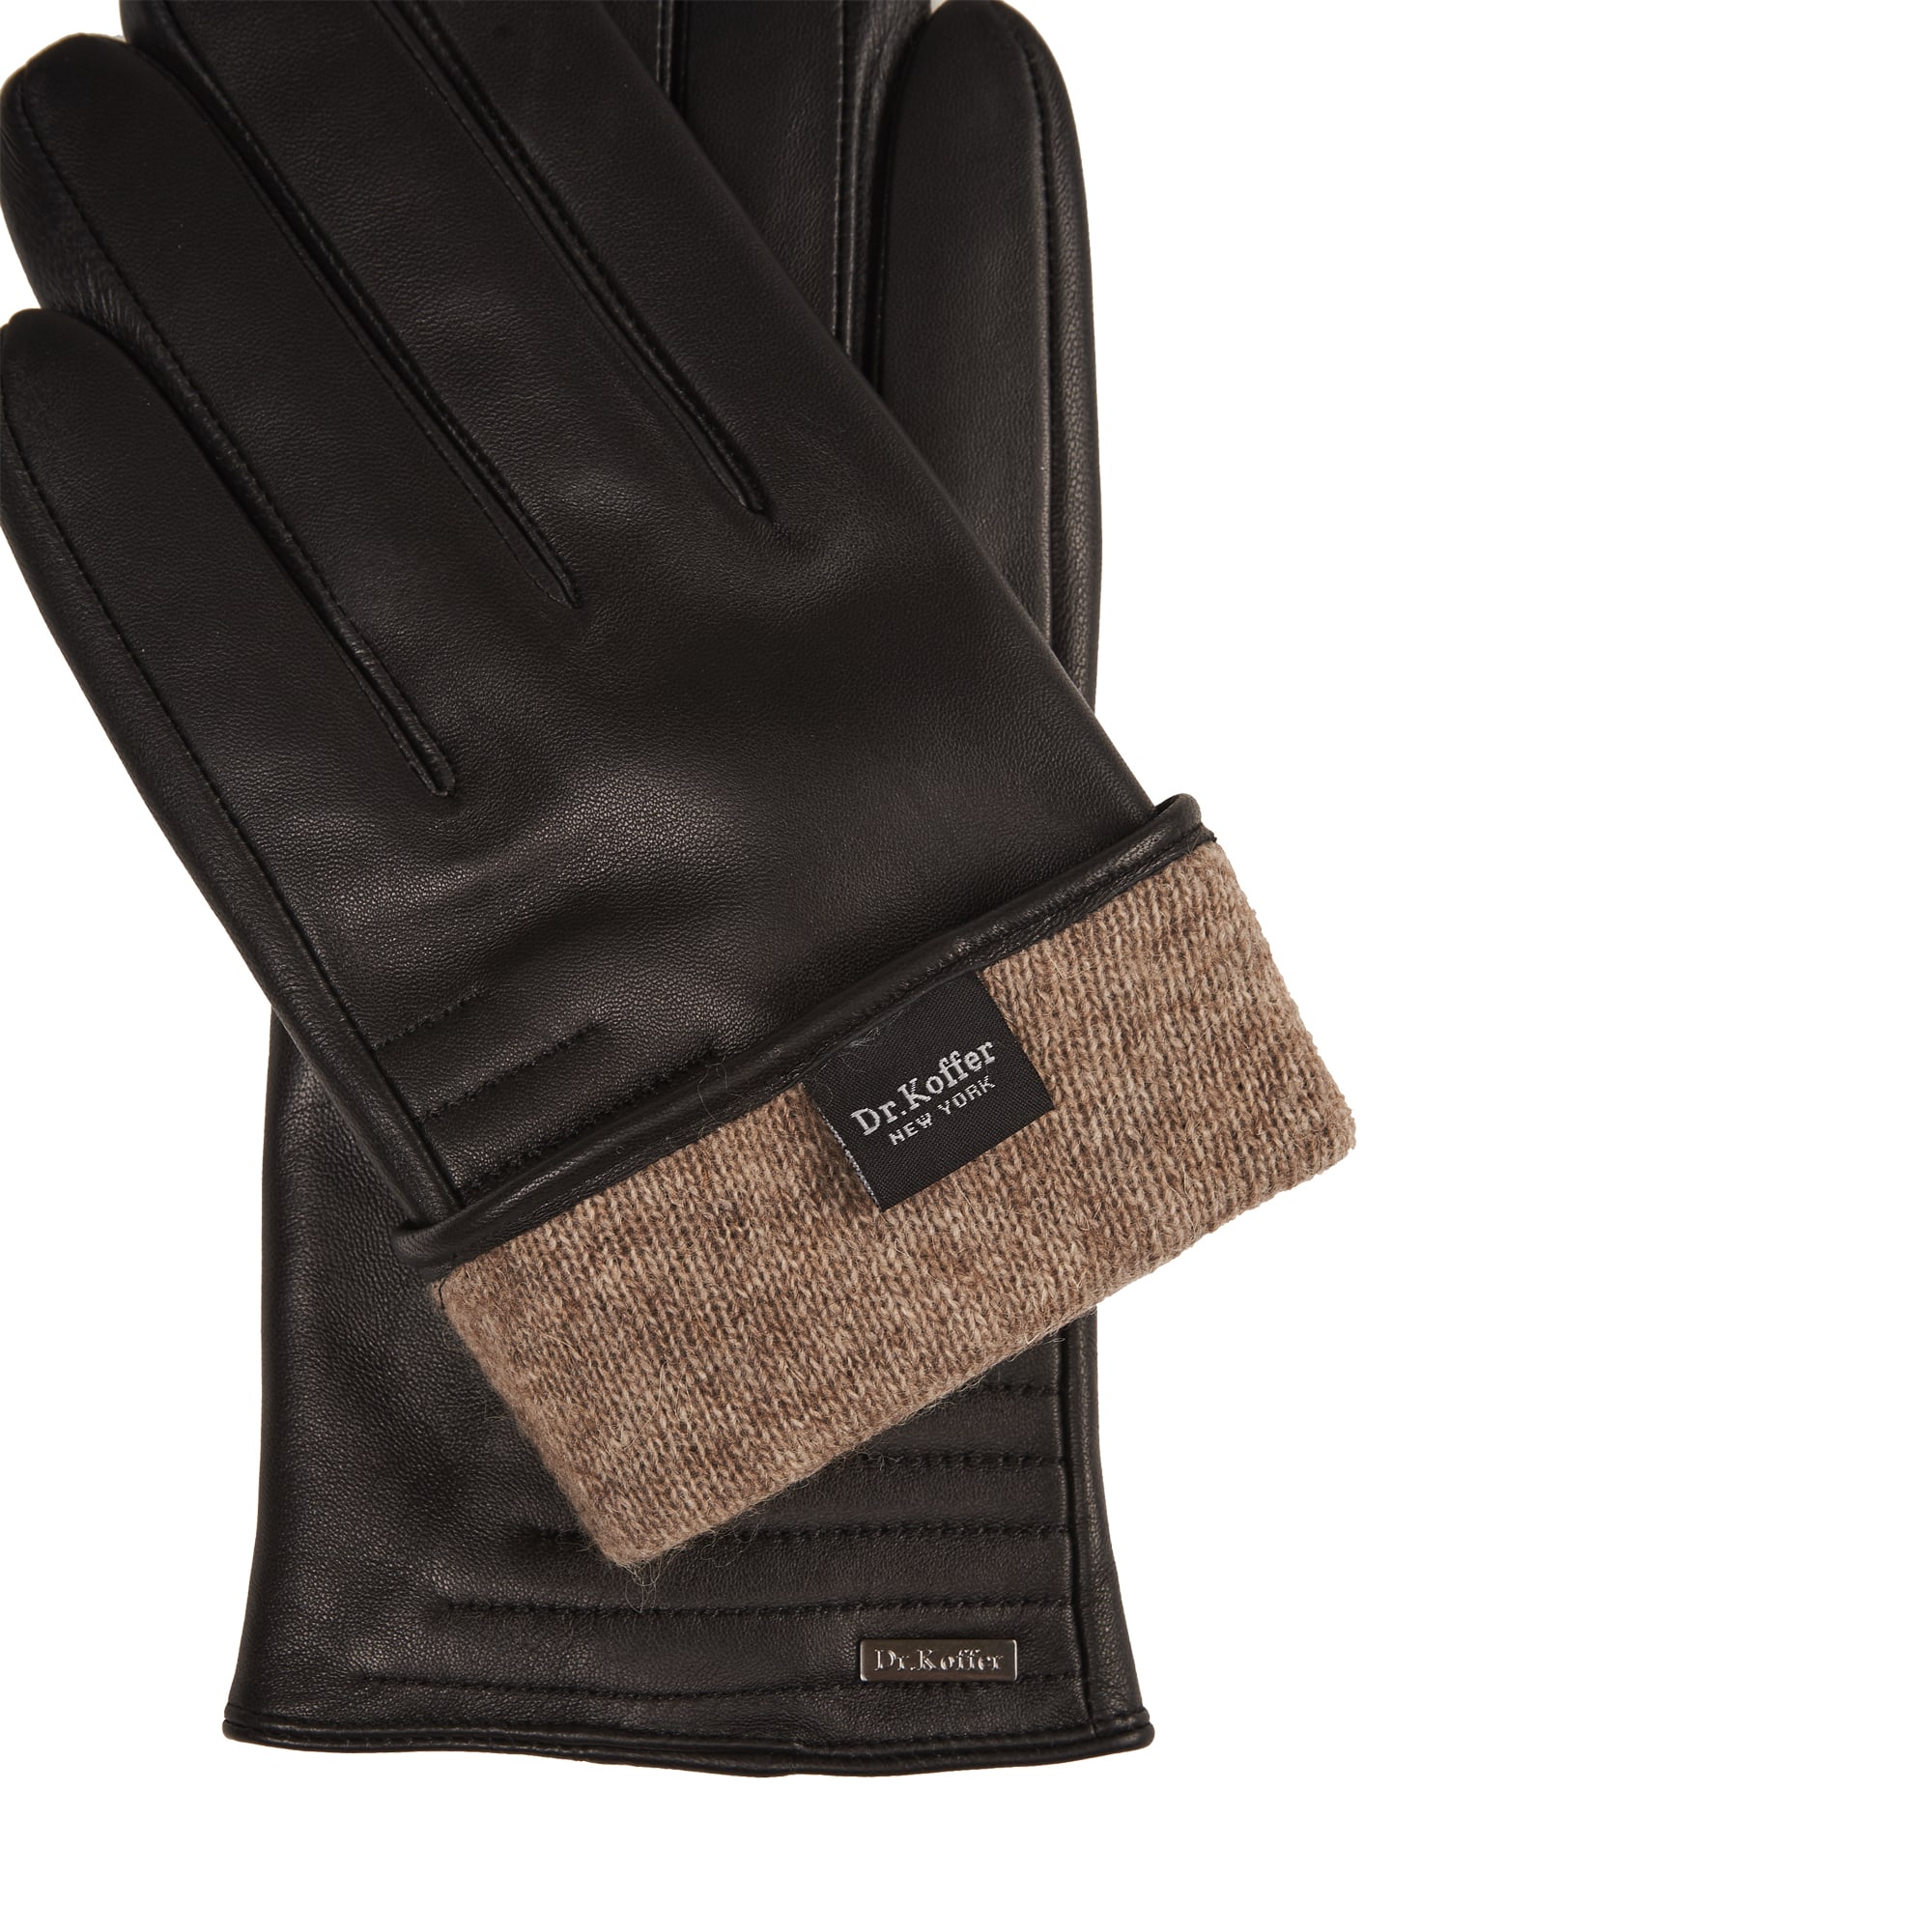 Др.Коффер H760125-236-04 перчатки мужские touch (11), размер 11, цвет черный - фото 3